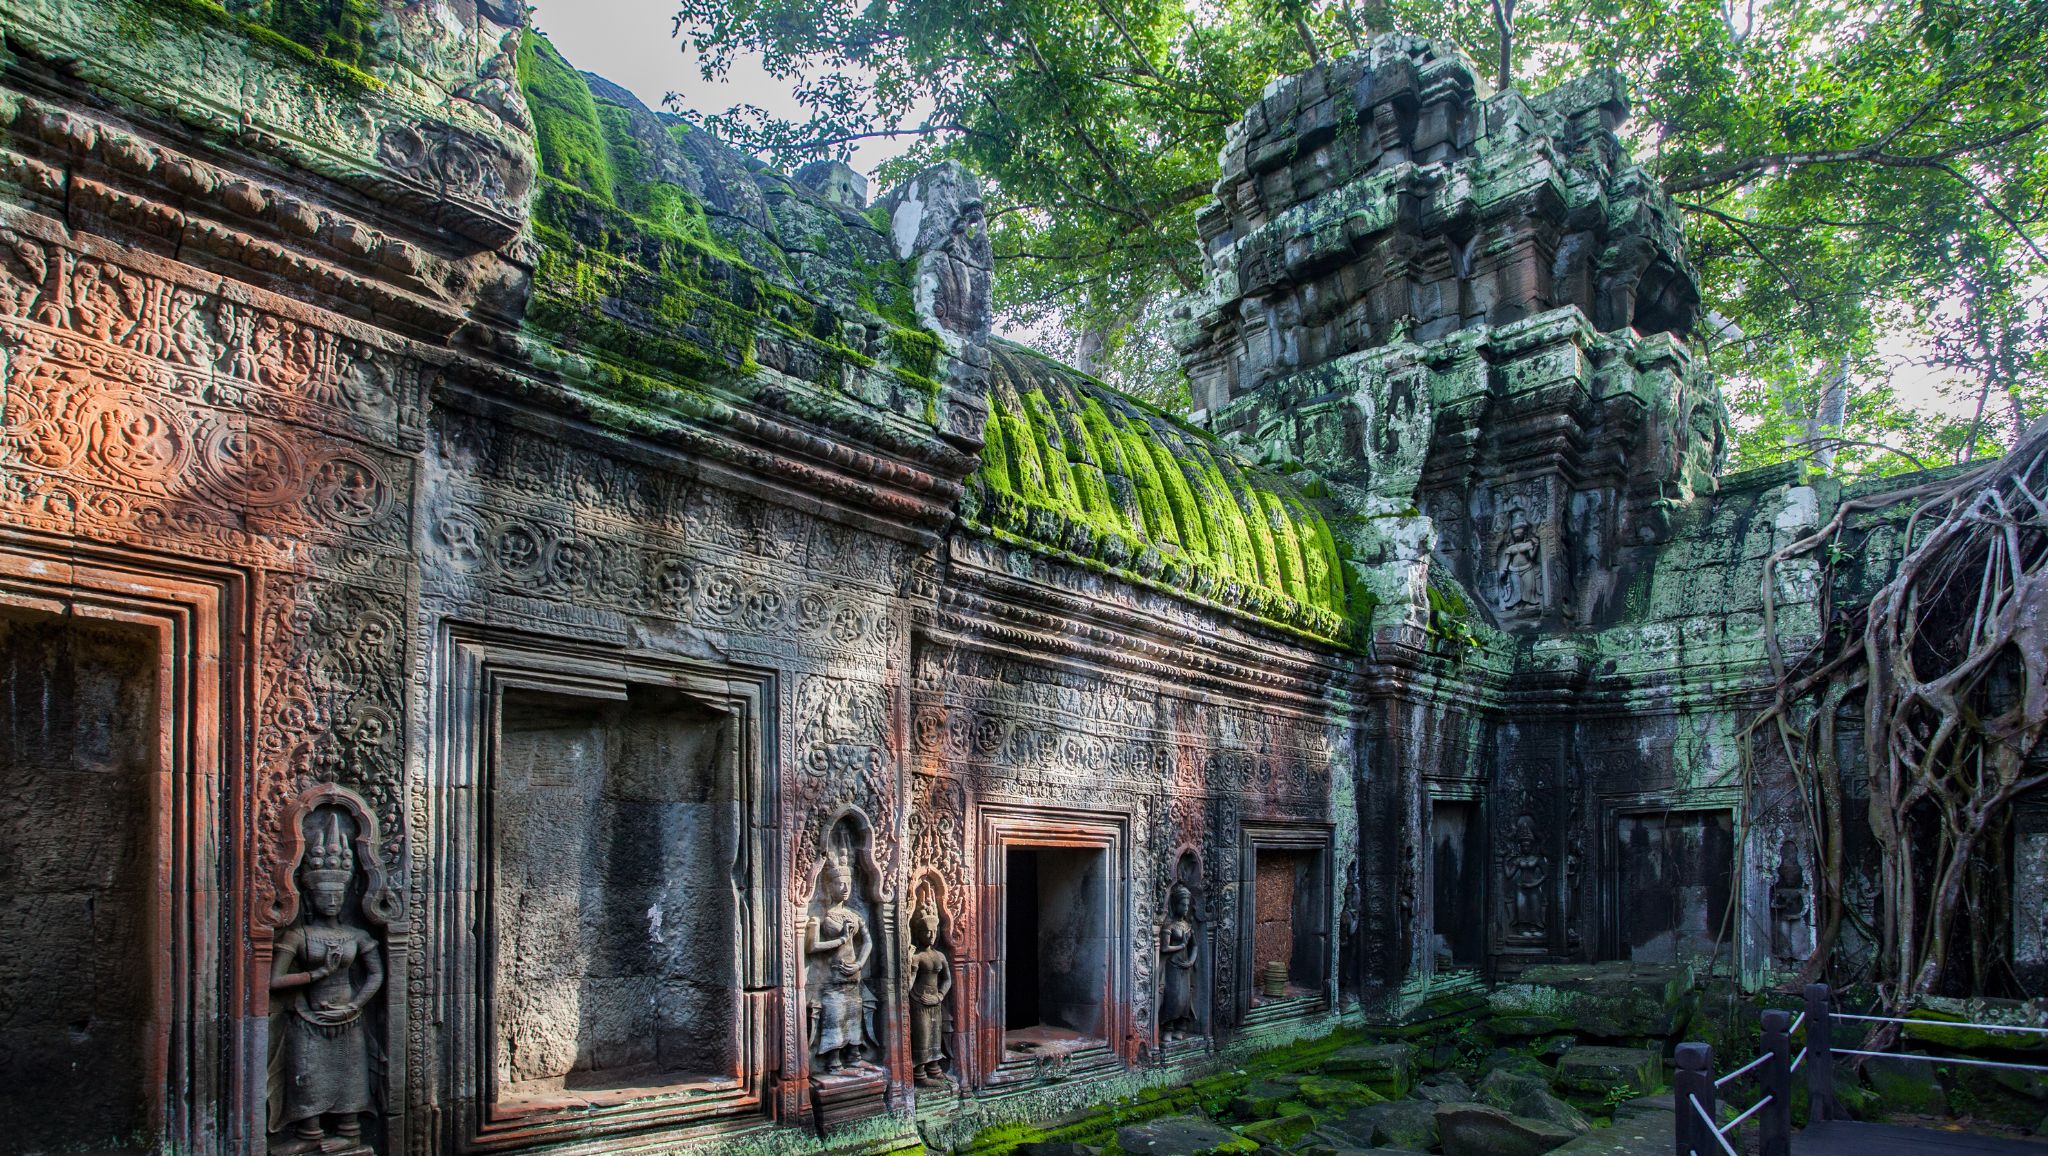 Day 8 The Awe Inspiring Angkor Wat